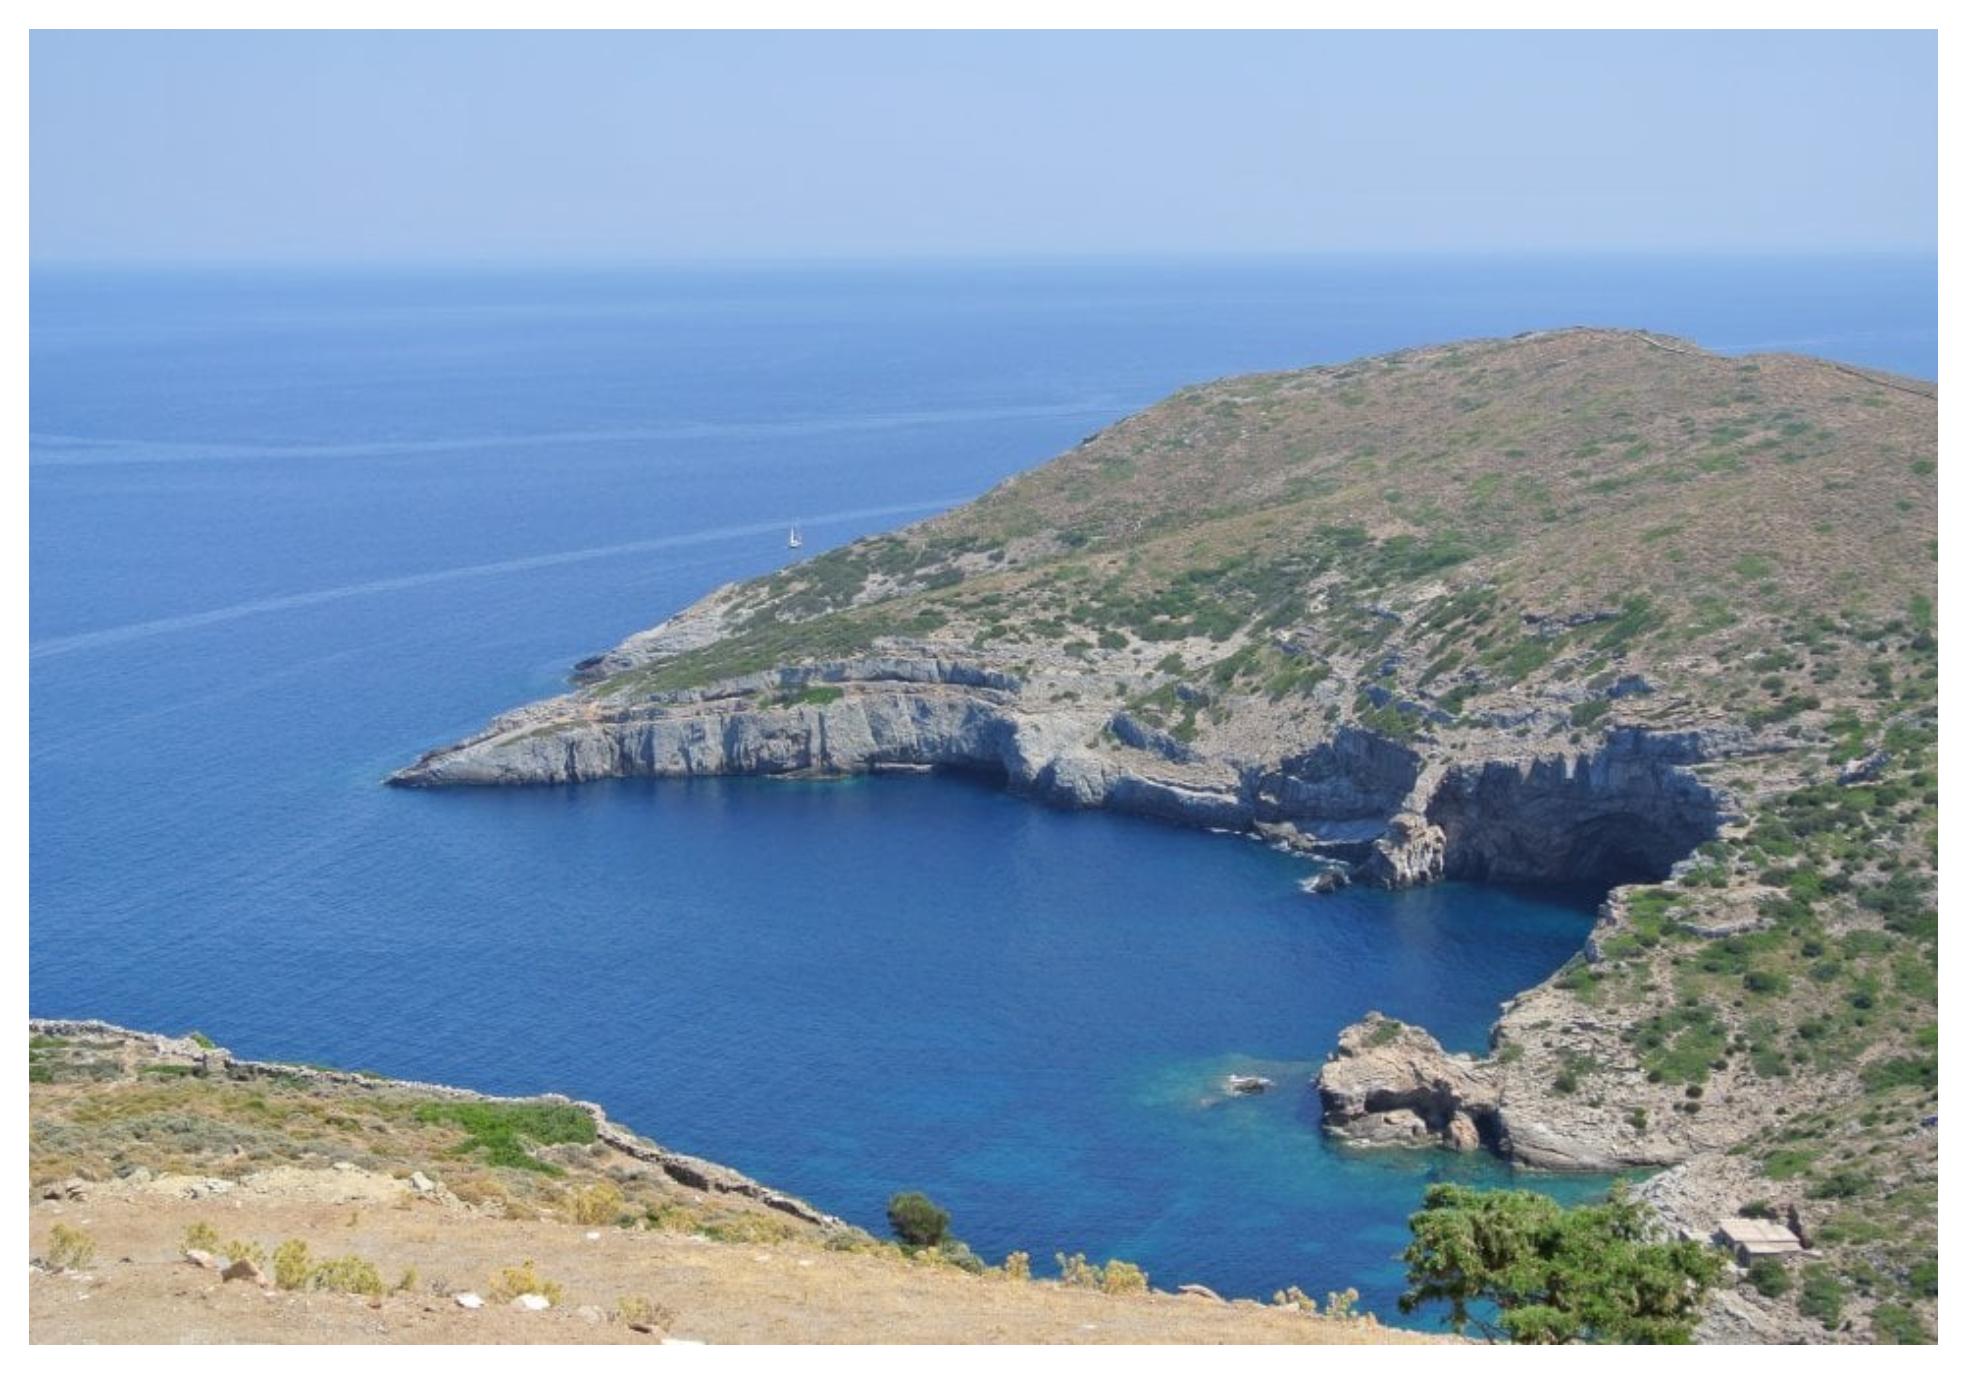 Οικονομικοί προορισμοί στην Ελλάδα για να περάσετε υπέροχες διακοπές